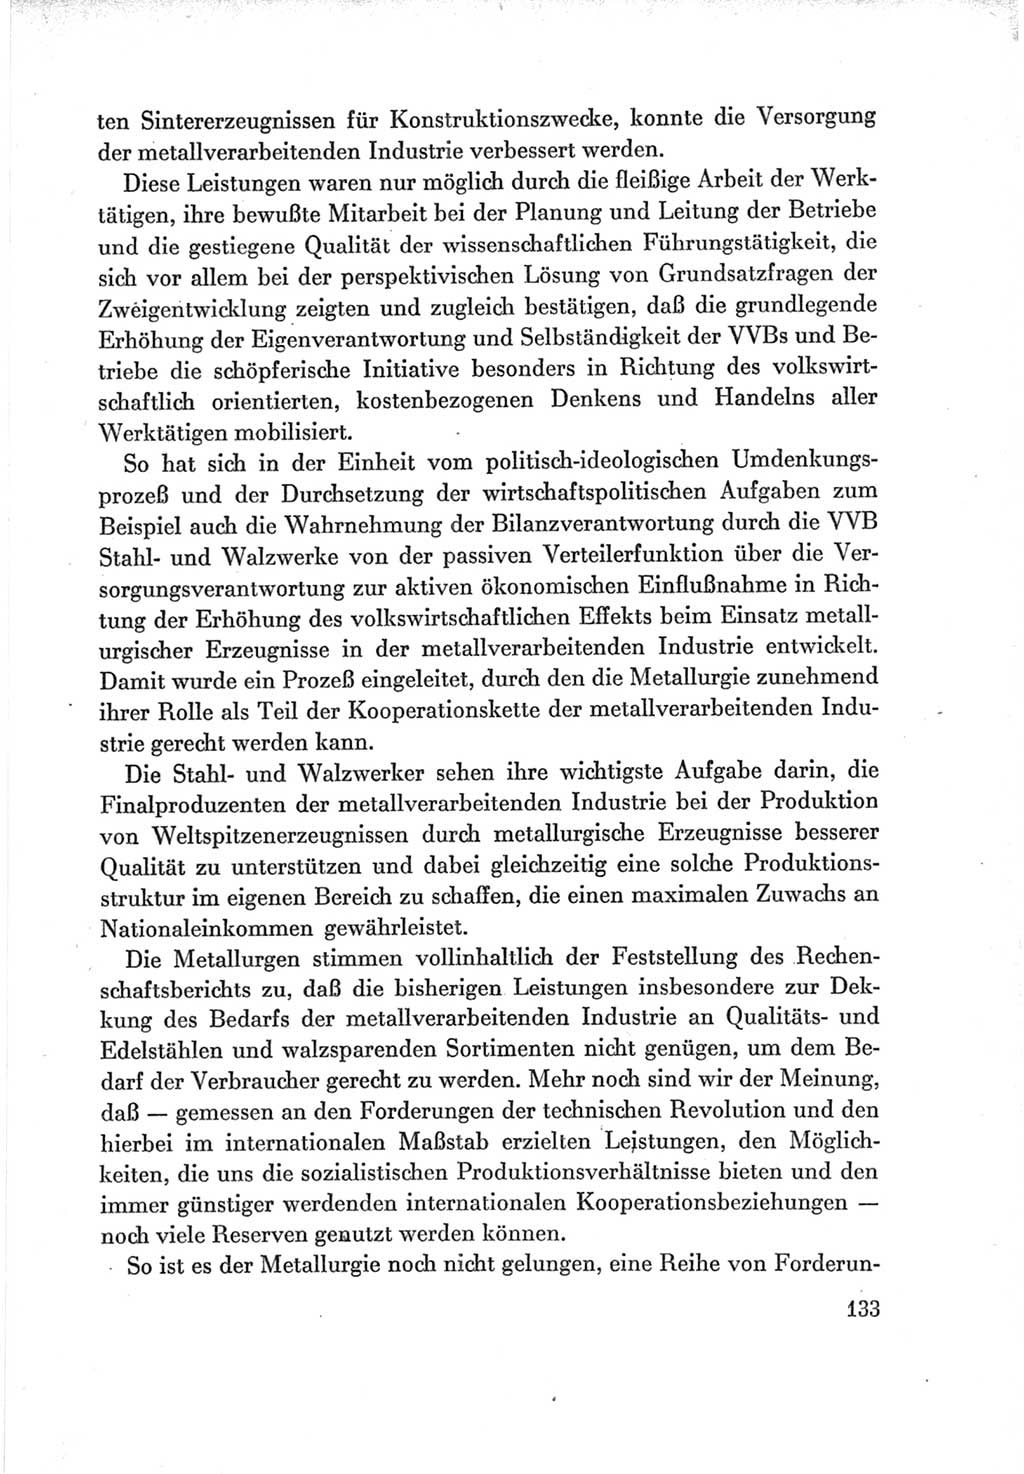 Protokoll der Verhandlungen des Ⅶ. Parteitages der Sozialistischen Einheitspartei Deutschlands (SED) [Deutsche Demokratische Republik (DDR)] 1967, Band Ⅲ, Seite 133 (Prot. Verh. Ⅶ. PT SED DDR 1967, Bd. Ⅲ, S. 133)